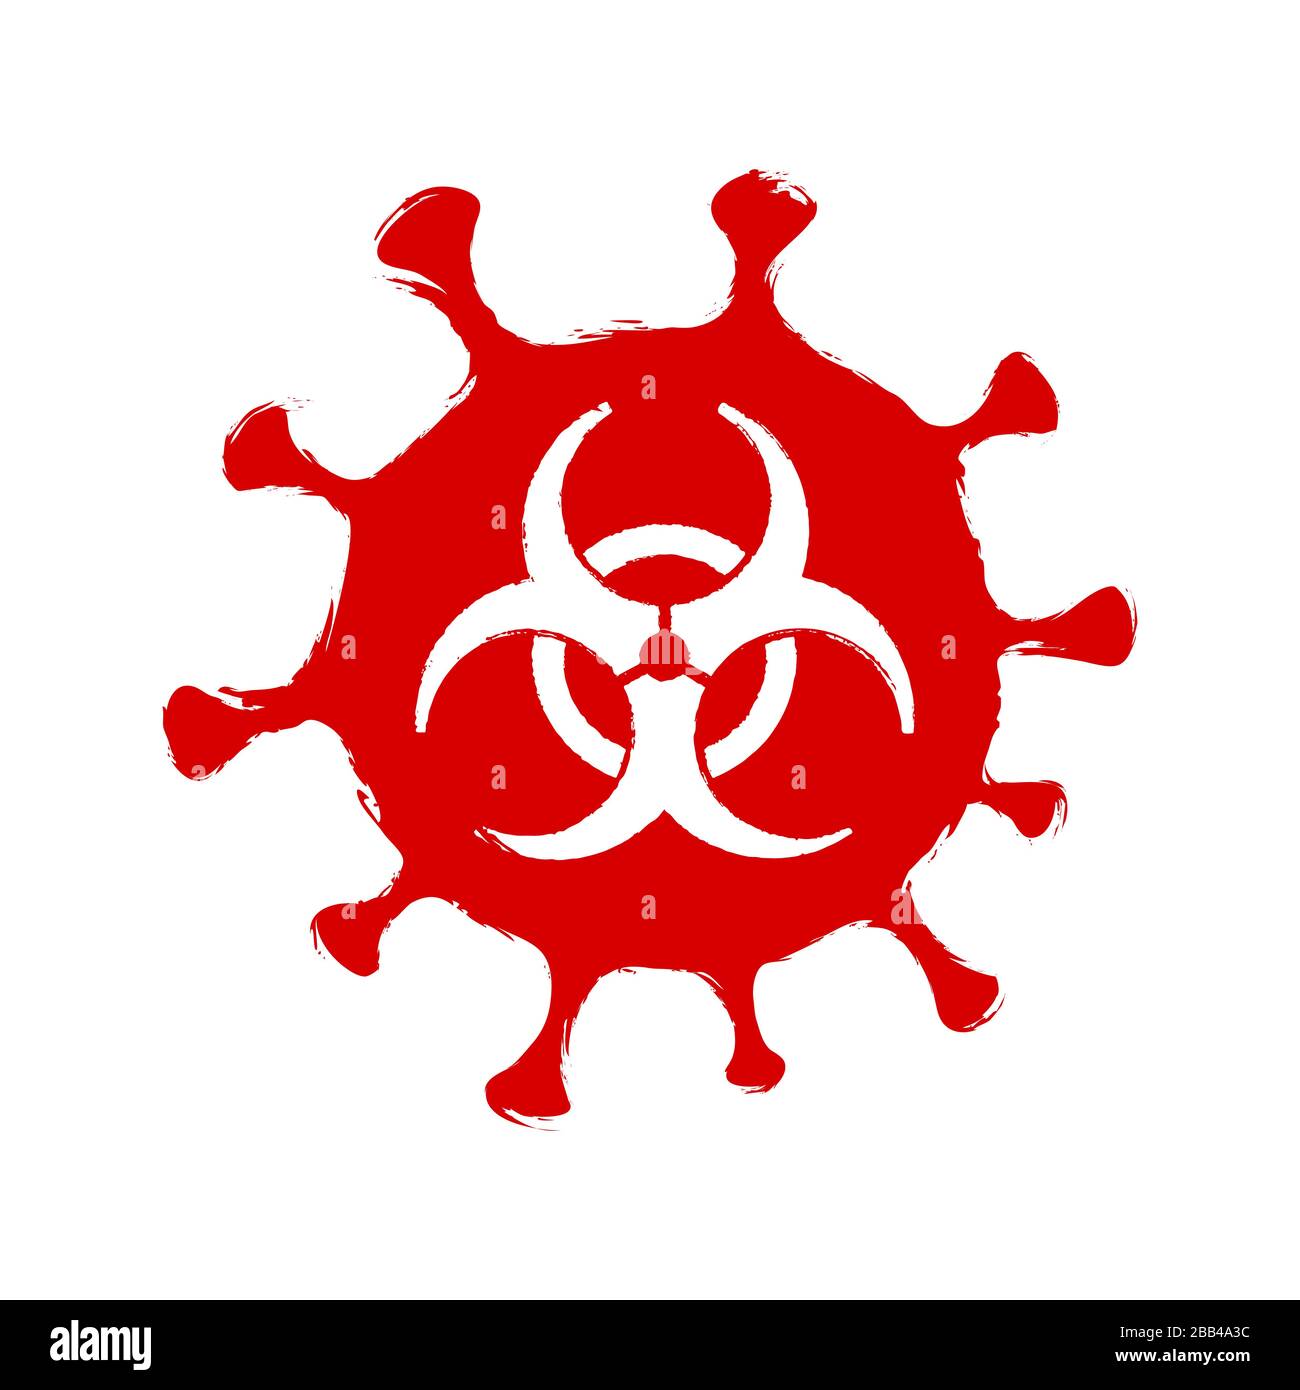 Simbolo di coronavirus grunge. Segnale di avvertenza di rischio biologico Covid-19. Simbolo di epidemia e pandemia. Vettore isolato. Illustrazione Vettoriale